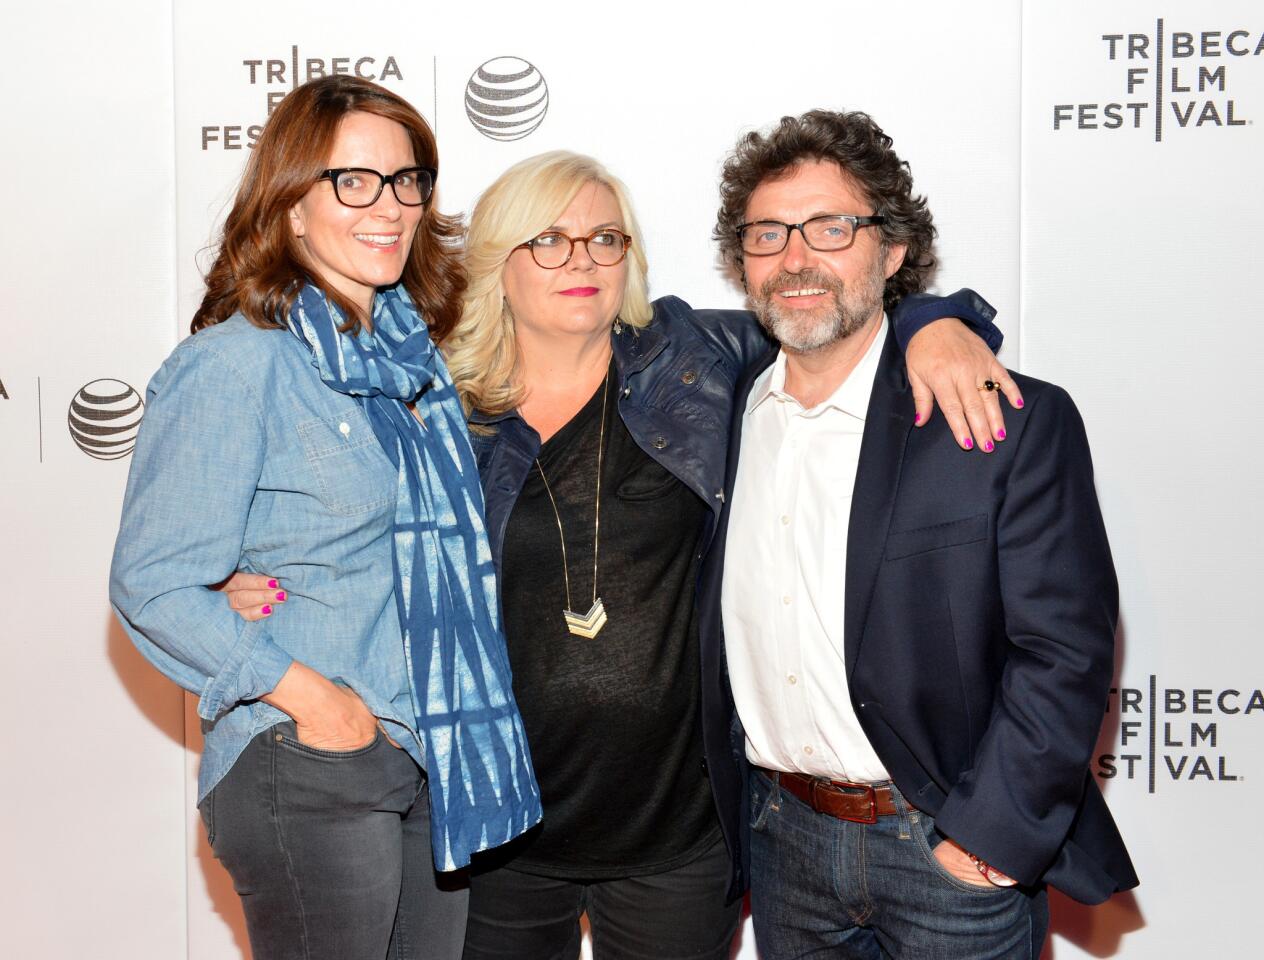 Tribeca Film Festival 2015 | The scene